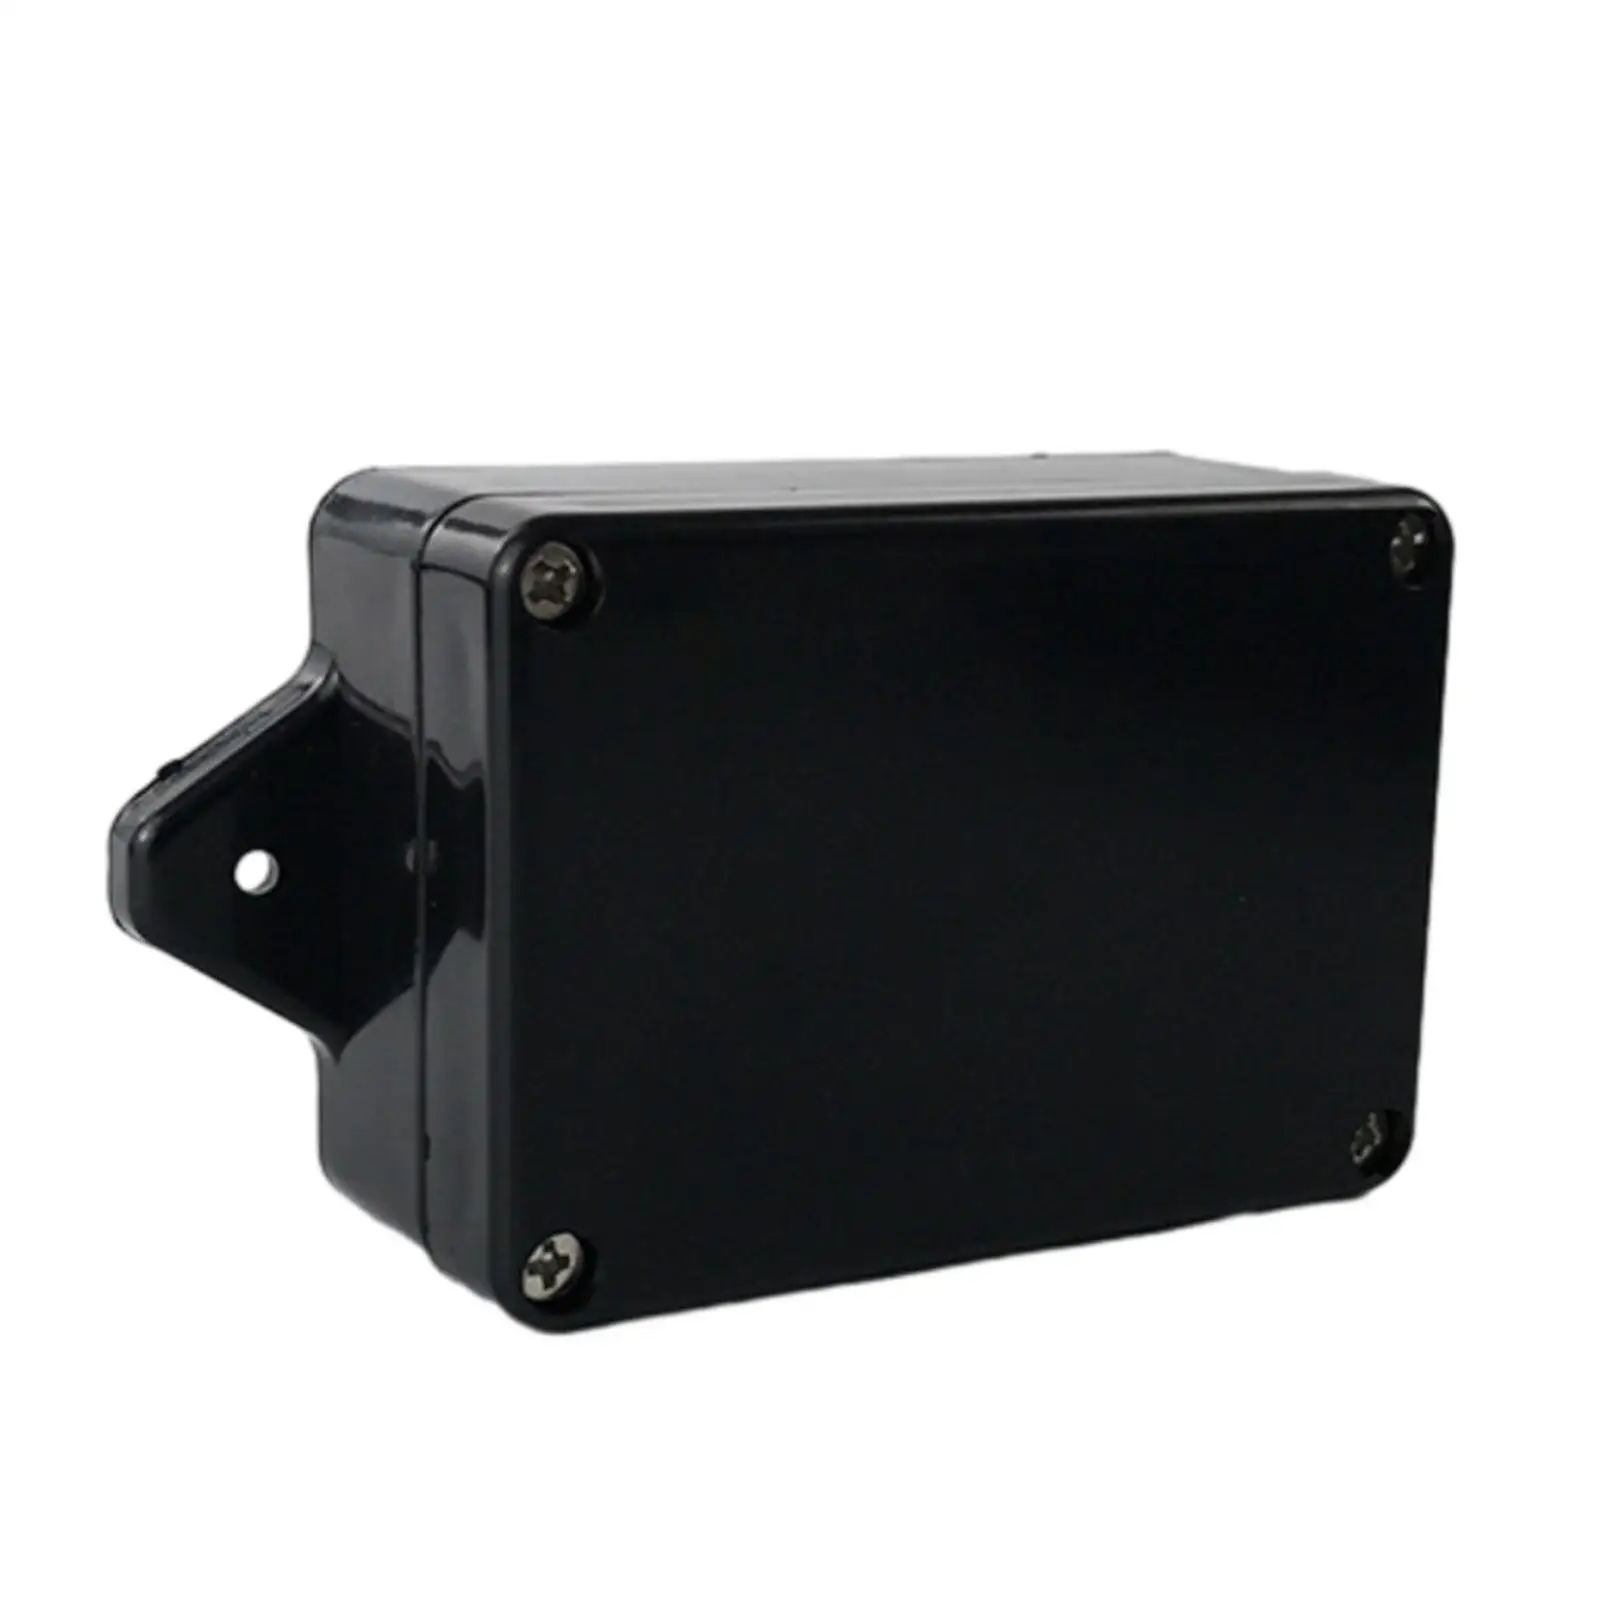 Waterproof Junction Box Rainproof Professional Instrument Case for Indoor